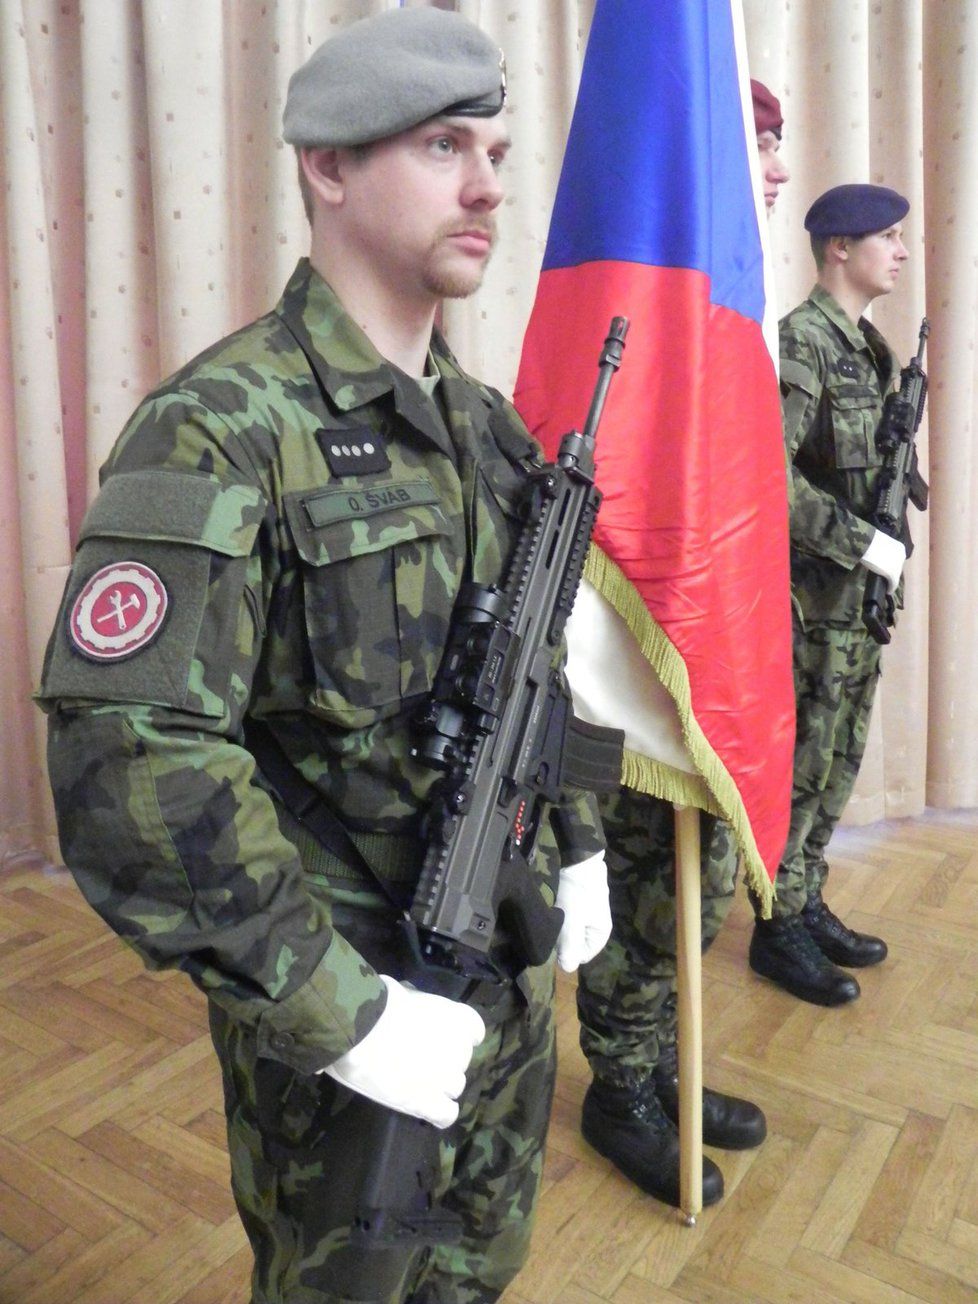 V Karlovarském kraji má do čtyř let vzniknout výcvikové středisko armády.